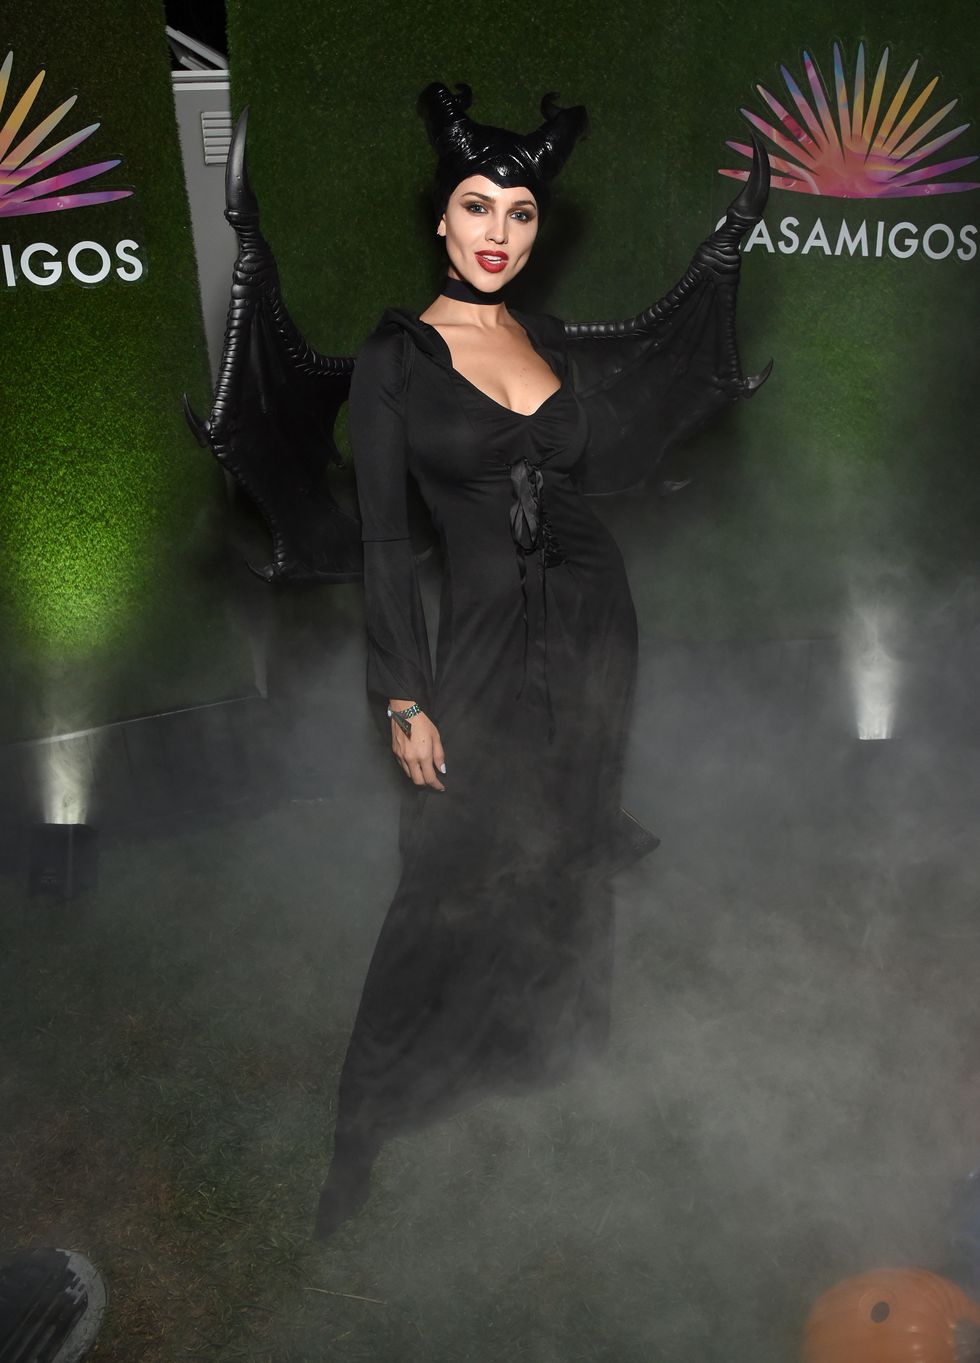   Eiza González hóa trang thành Maleficent tại bữa tiệc Halloween của Casamigos.  